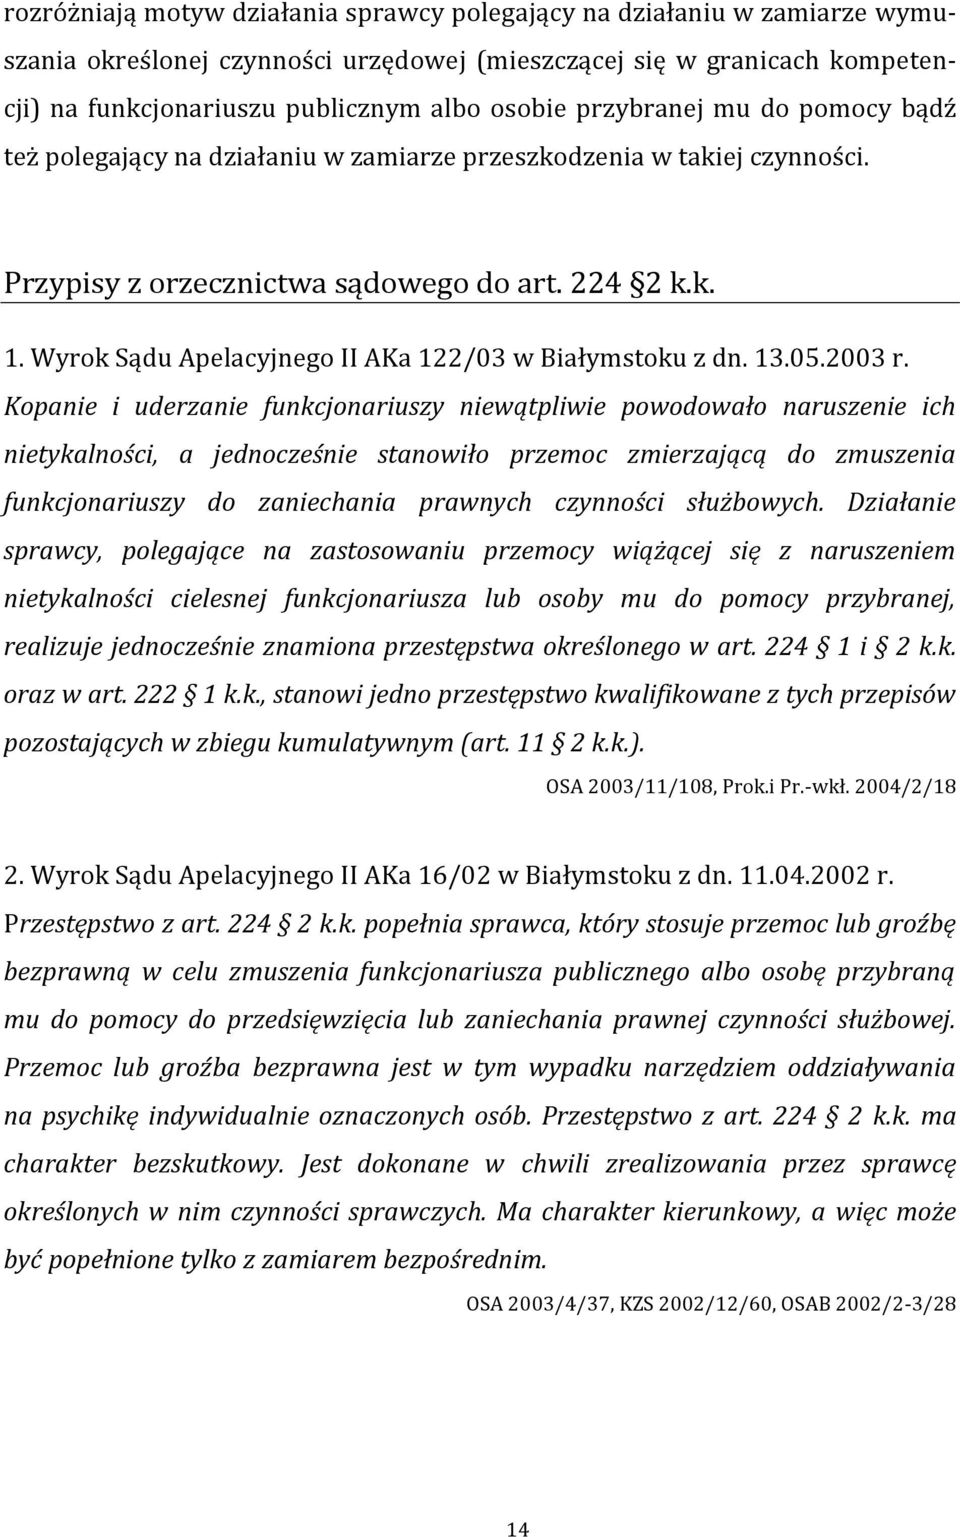 Wyrok Sądu Apelacyjnego II AKa 122/03 w Białymstoku z dn. 13.05.2003 r.